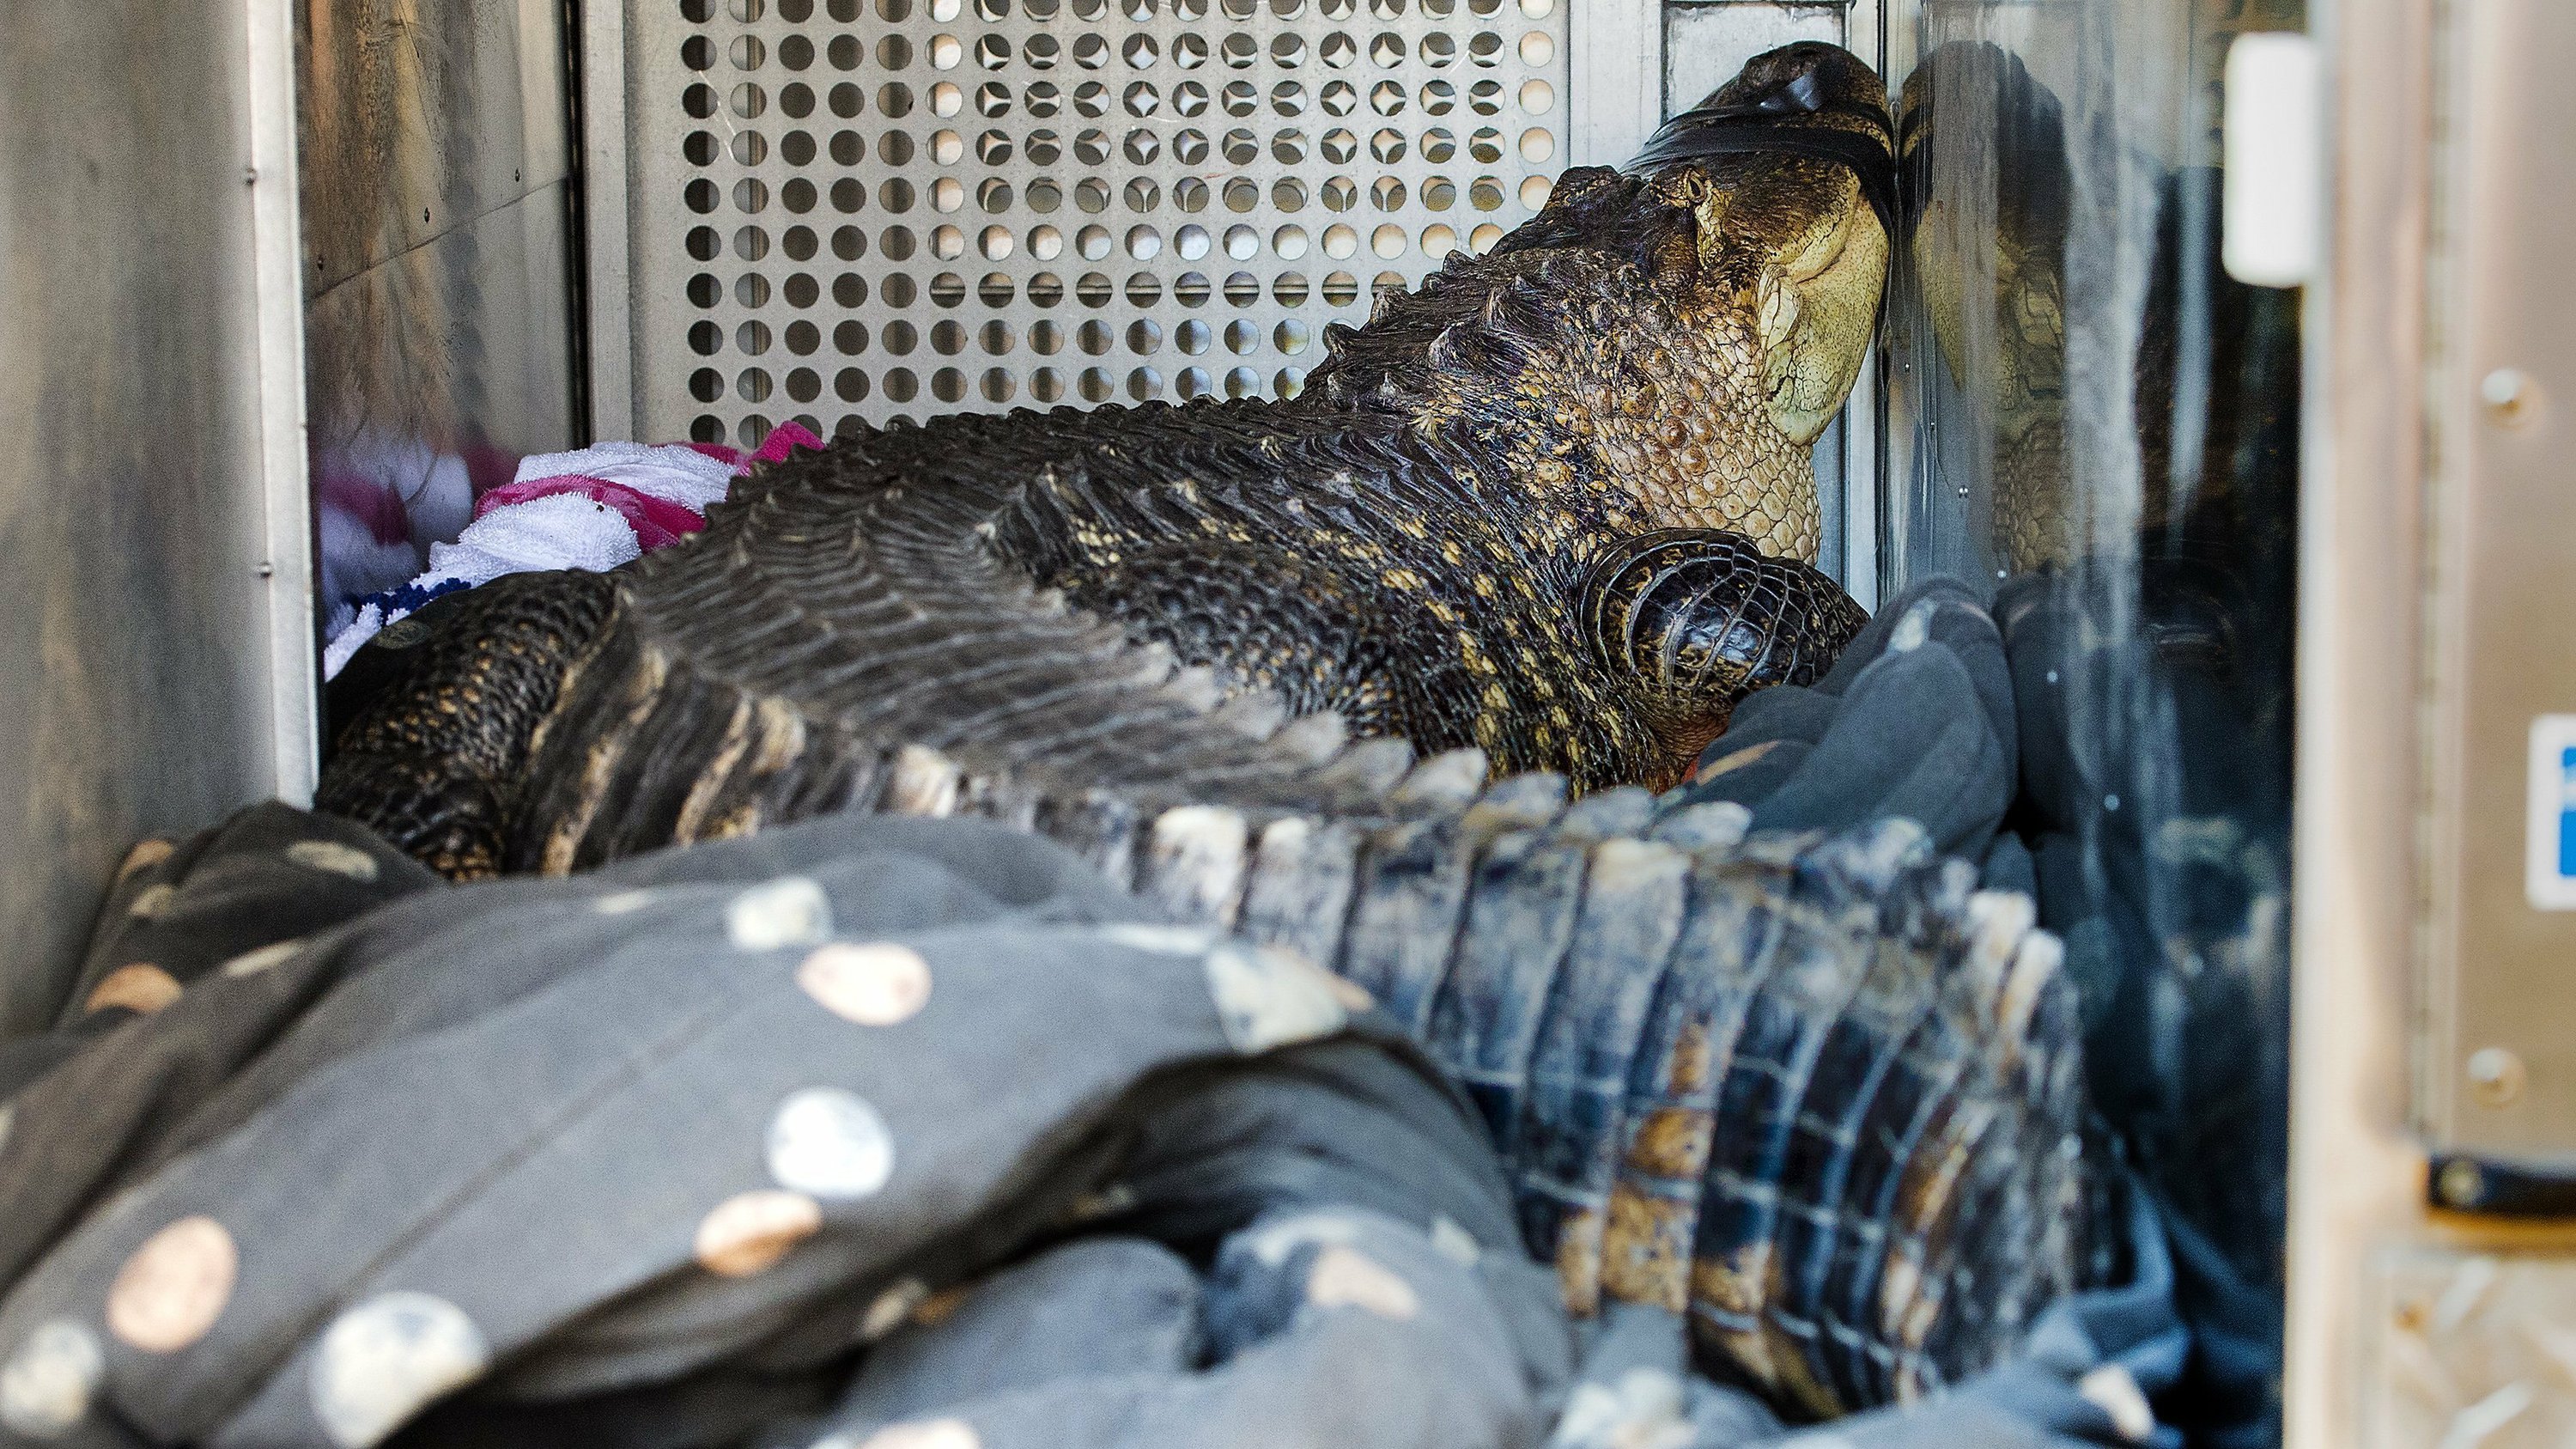 Surprise Large Alligator Found In Kansas City Hot Tub